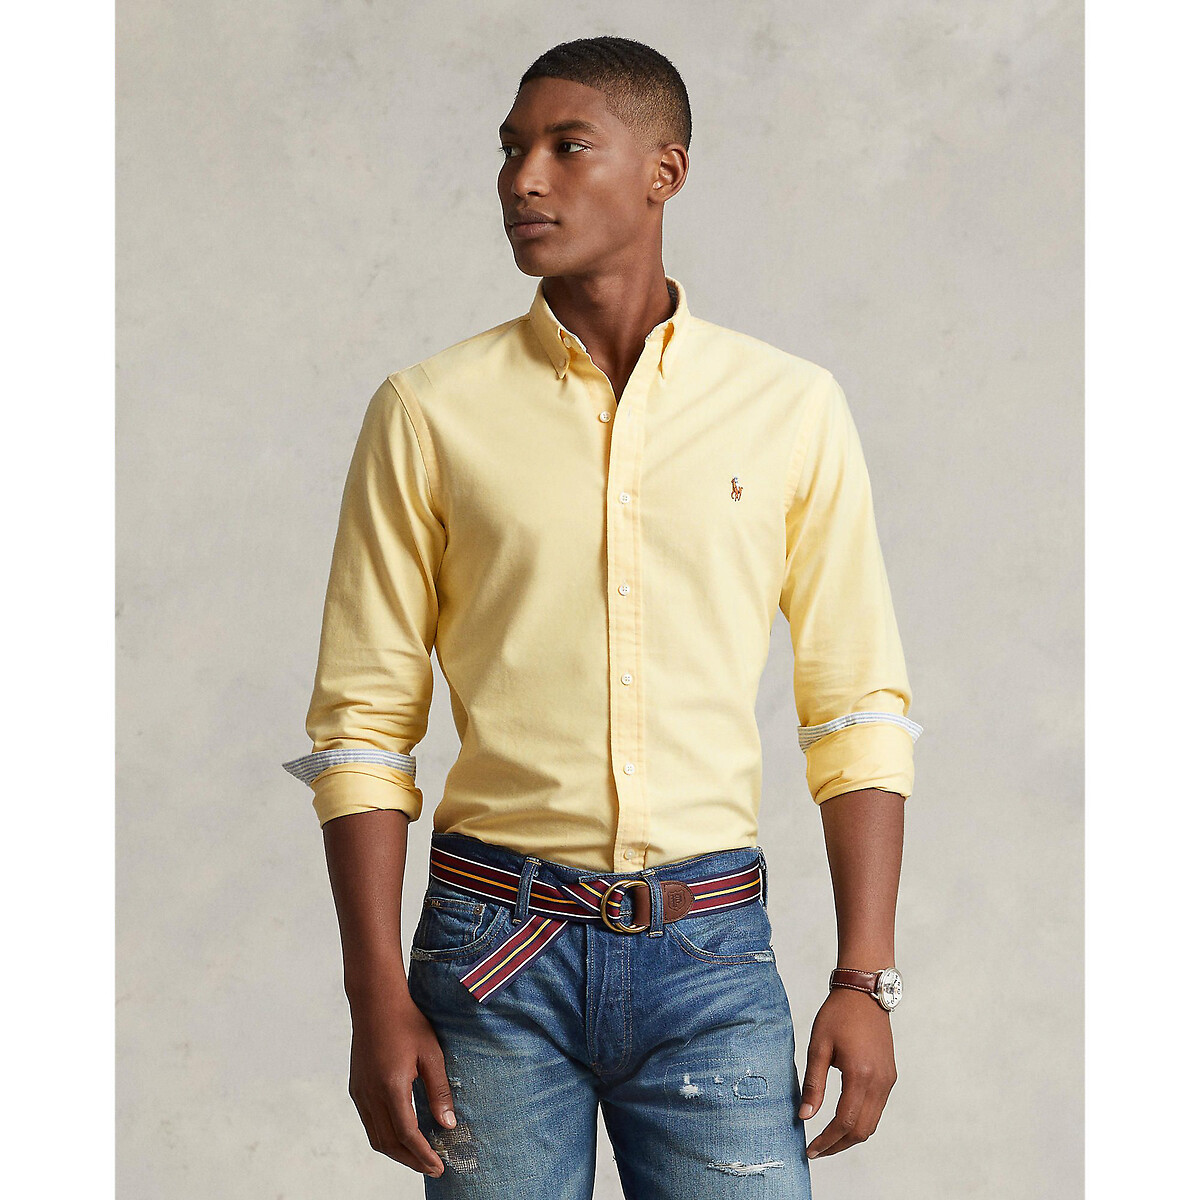 Рубашка прямого покроя из ткани оксфорд XXL желтый жакет из джинсовой ткани прямого покроя xs серый